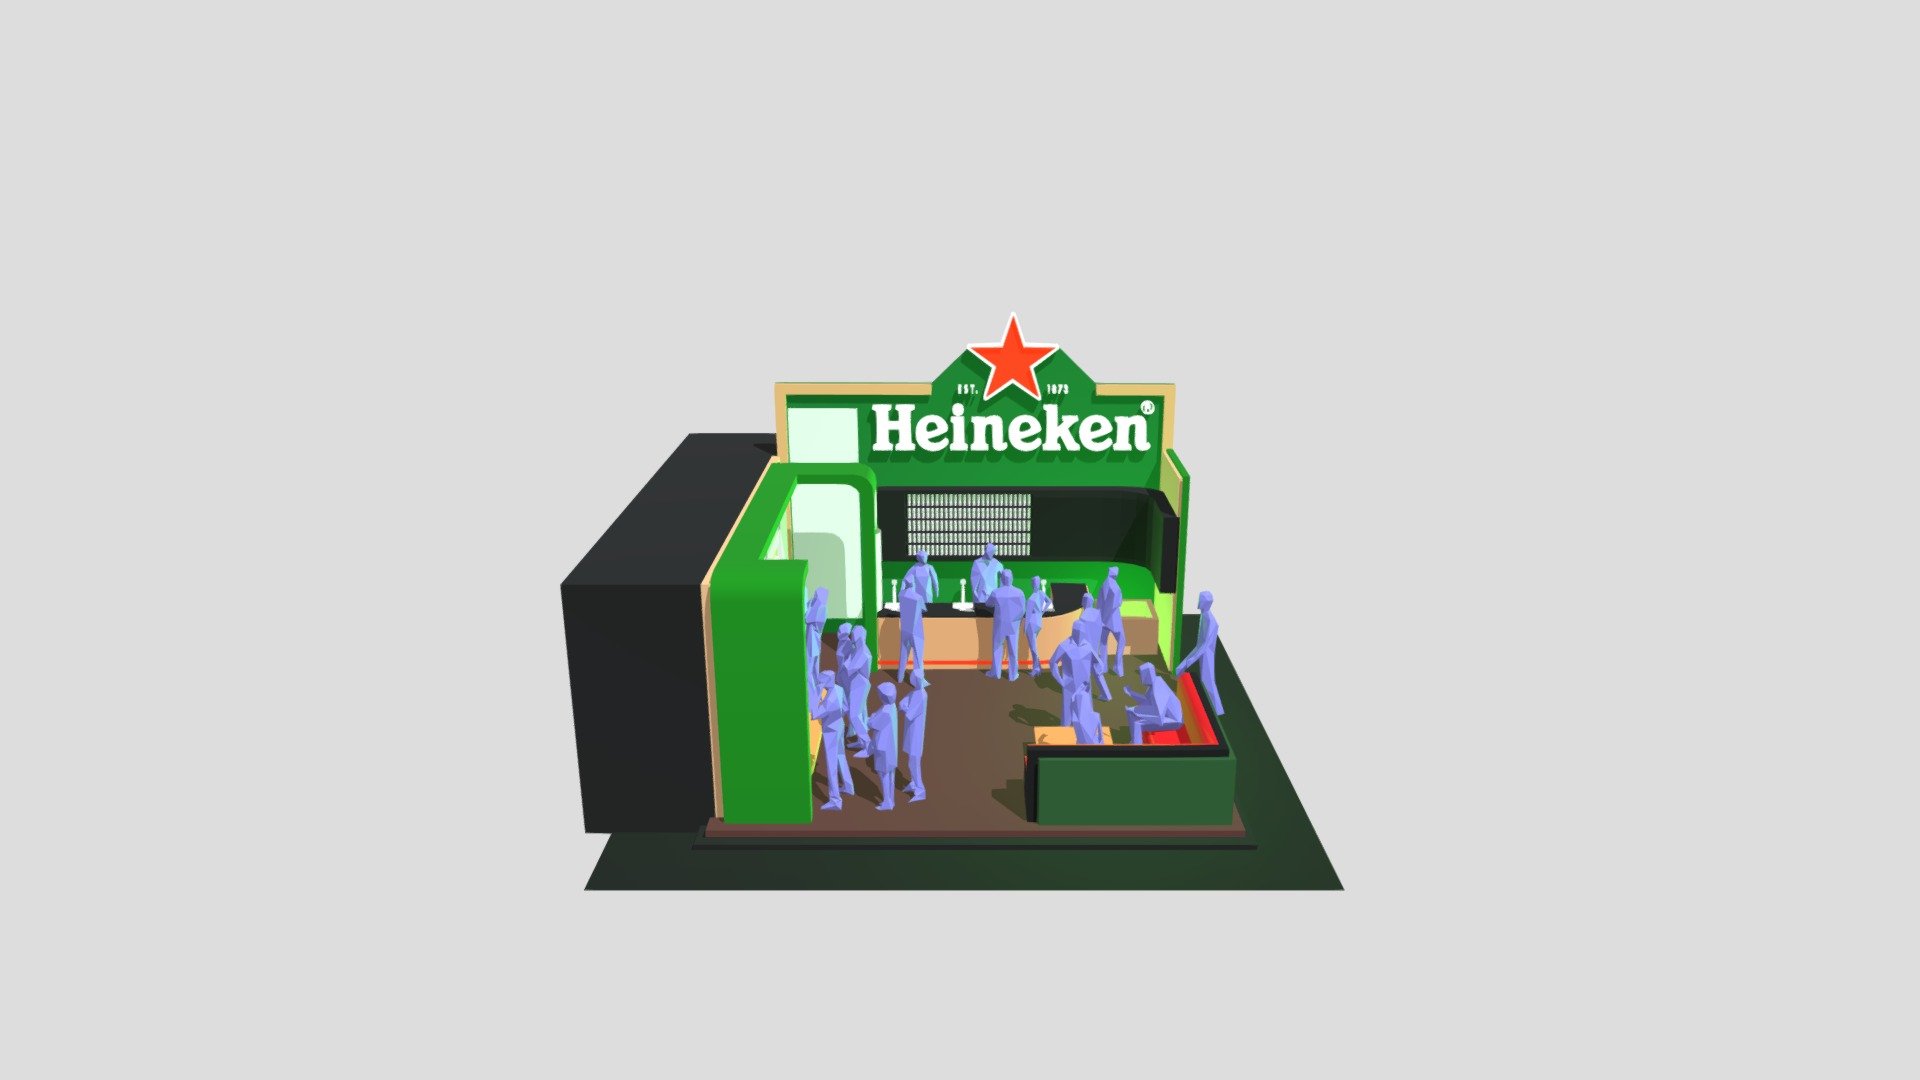 Heineken Booth - 3D model by matheusdinizgonzaga 3d model